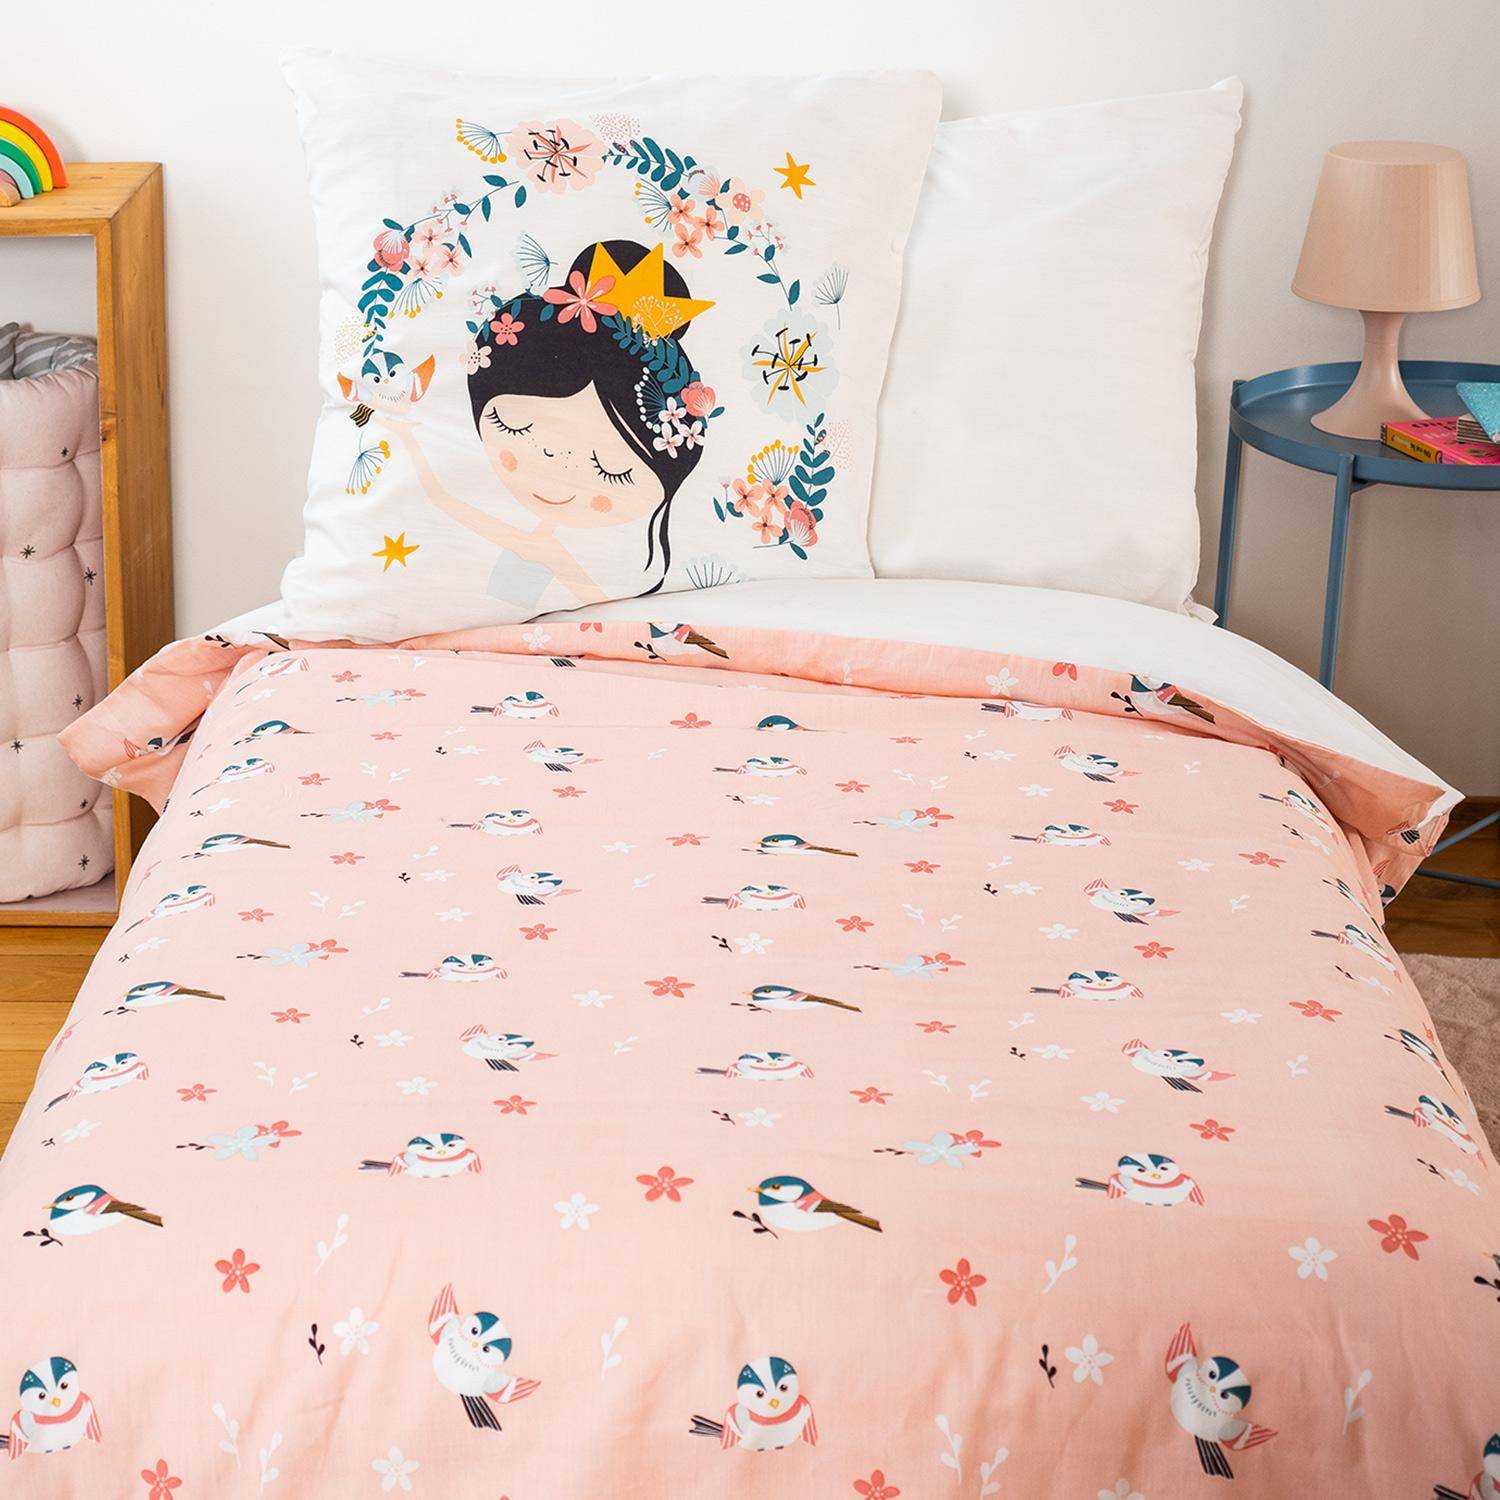 Parure de lit réversible 1 place imprimé princesse et oiseaux en polycoton, 1 housse de couette et 1 oreiller,sweeek,Photo2